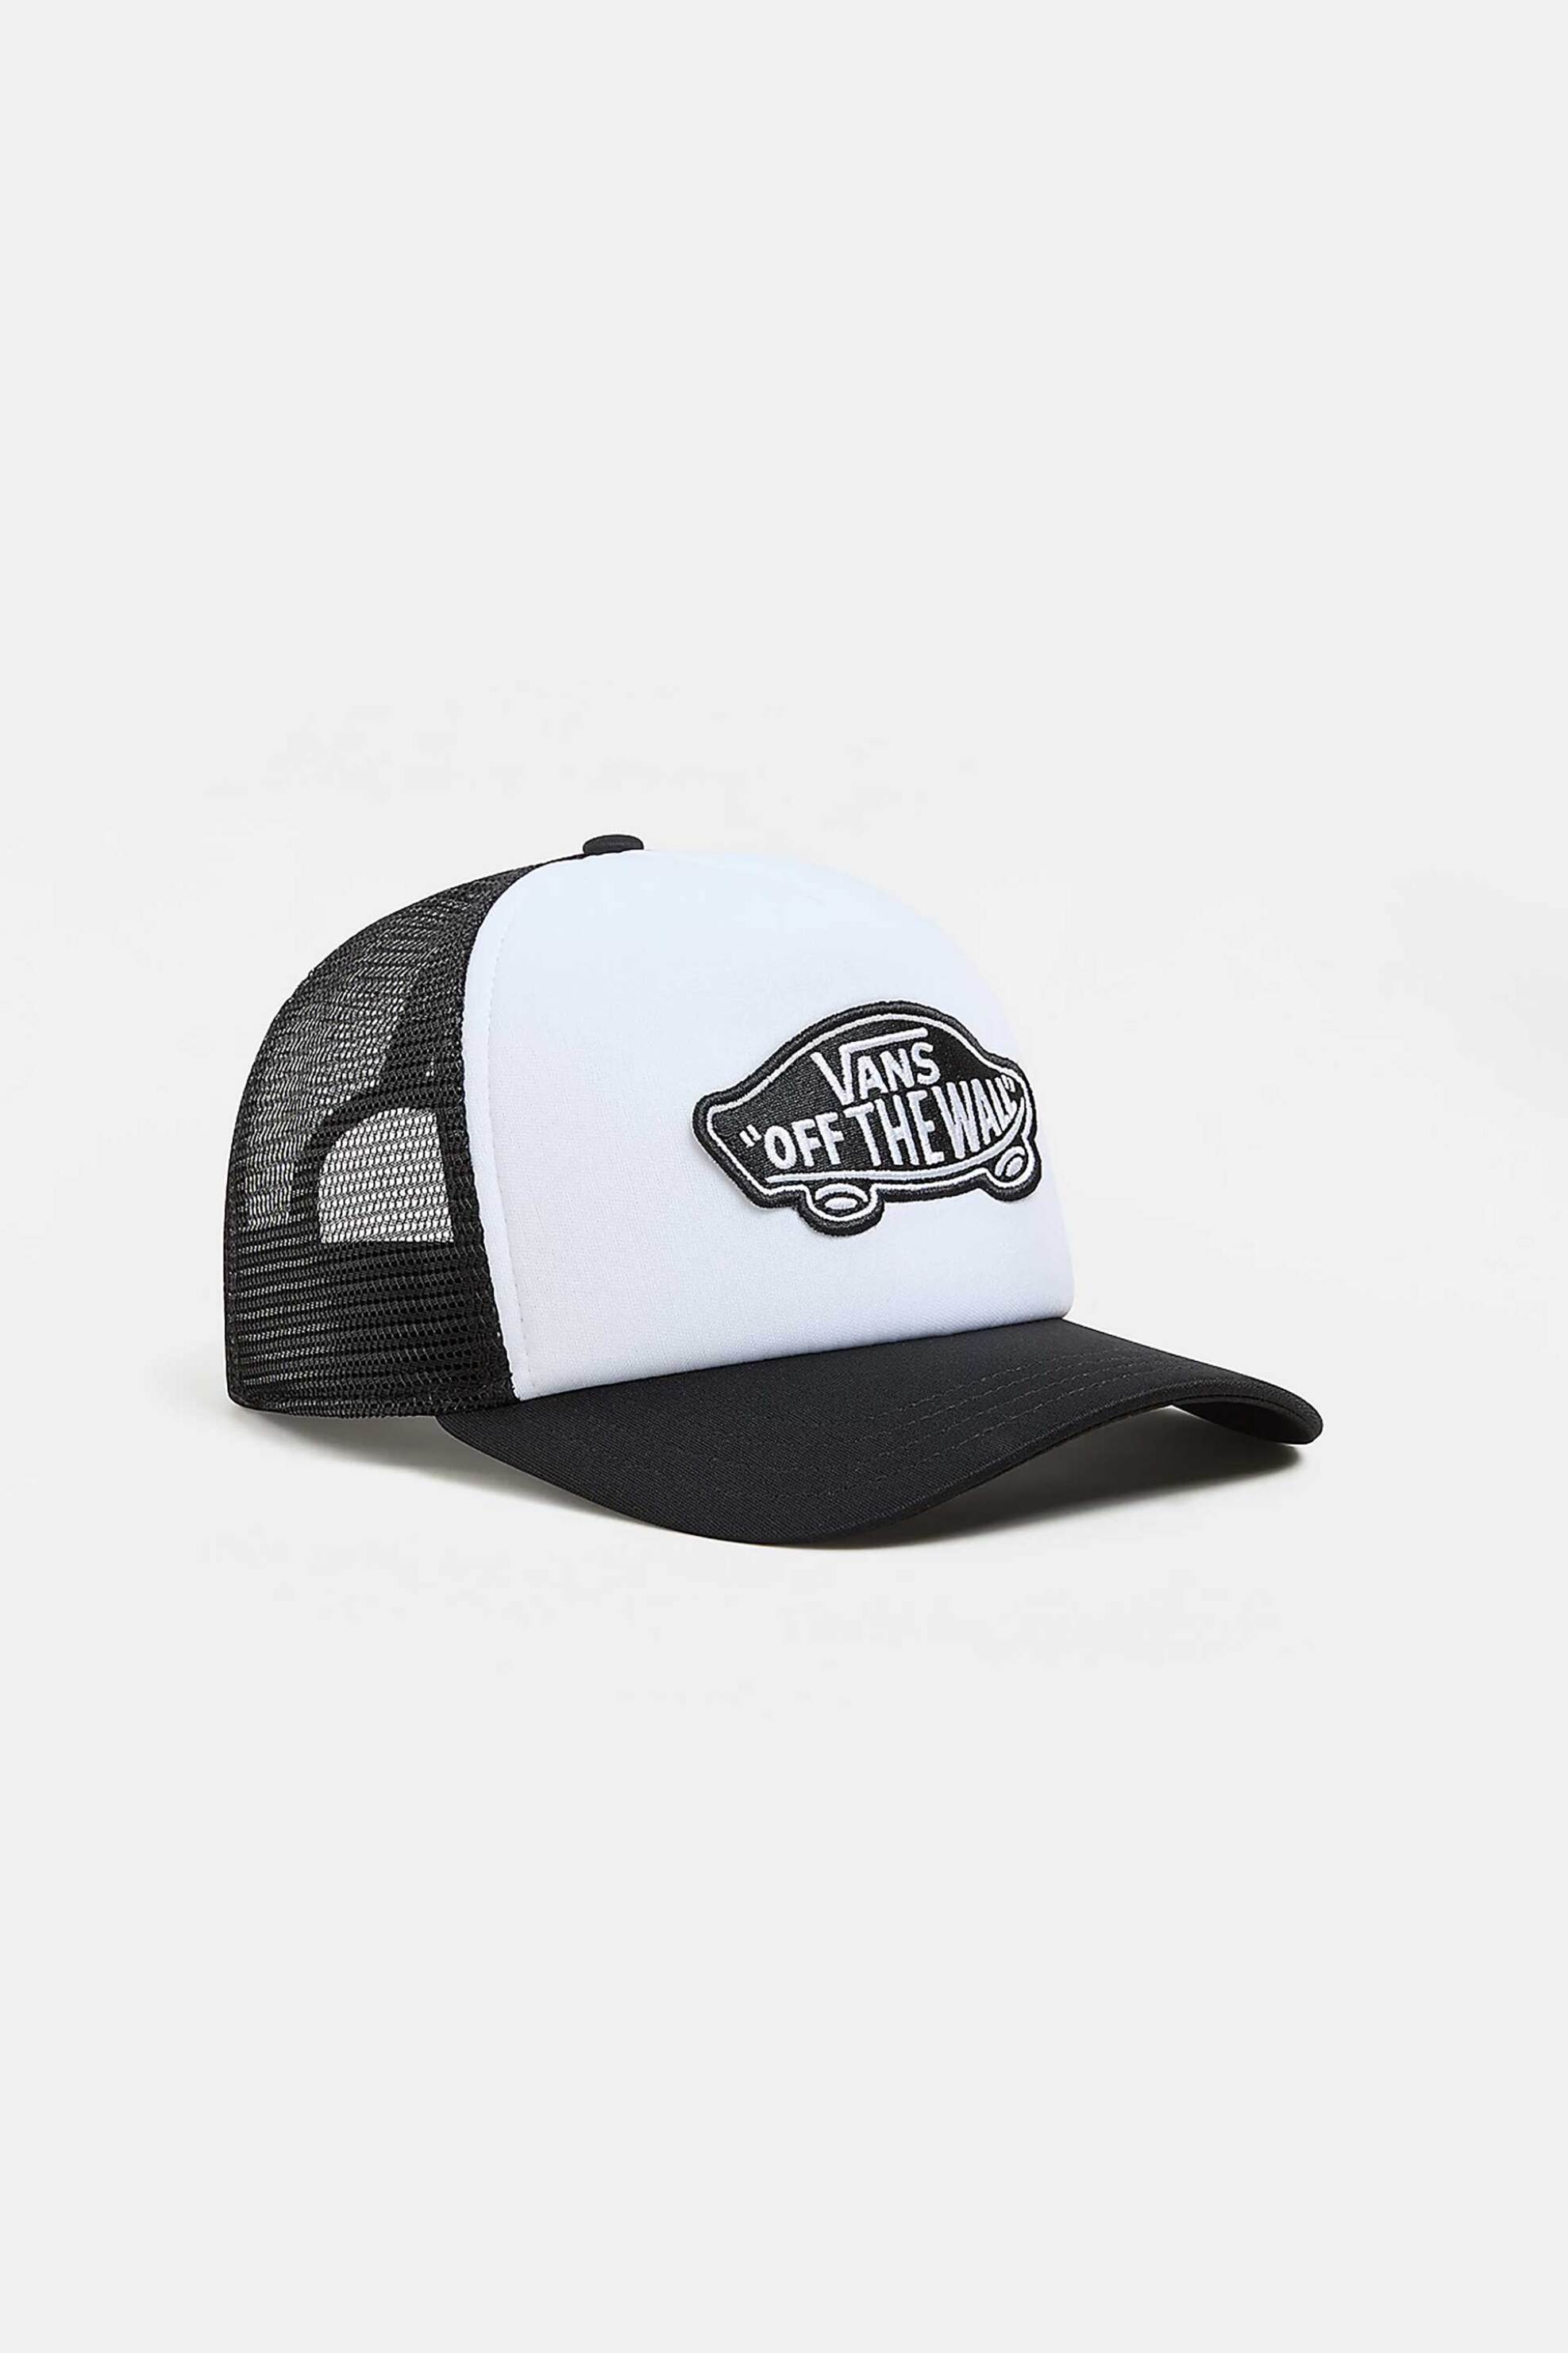 Ανδρική Μόδα > Ανδρικά Αξεσουάρ > Ανδρικά Καπέλα & Σκούφοι Vans ανδρικό καπέλο με logo patch "Classic Patch Curved Bill Trucker" - VN00066XY281 Ασπρόμαυρο